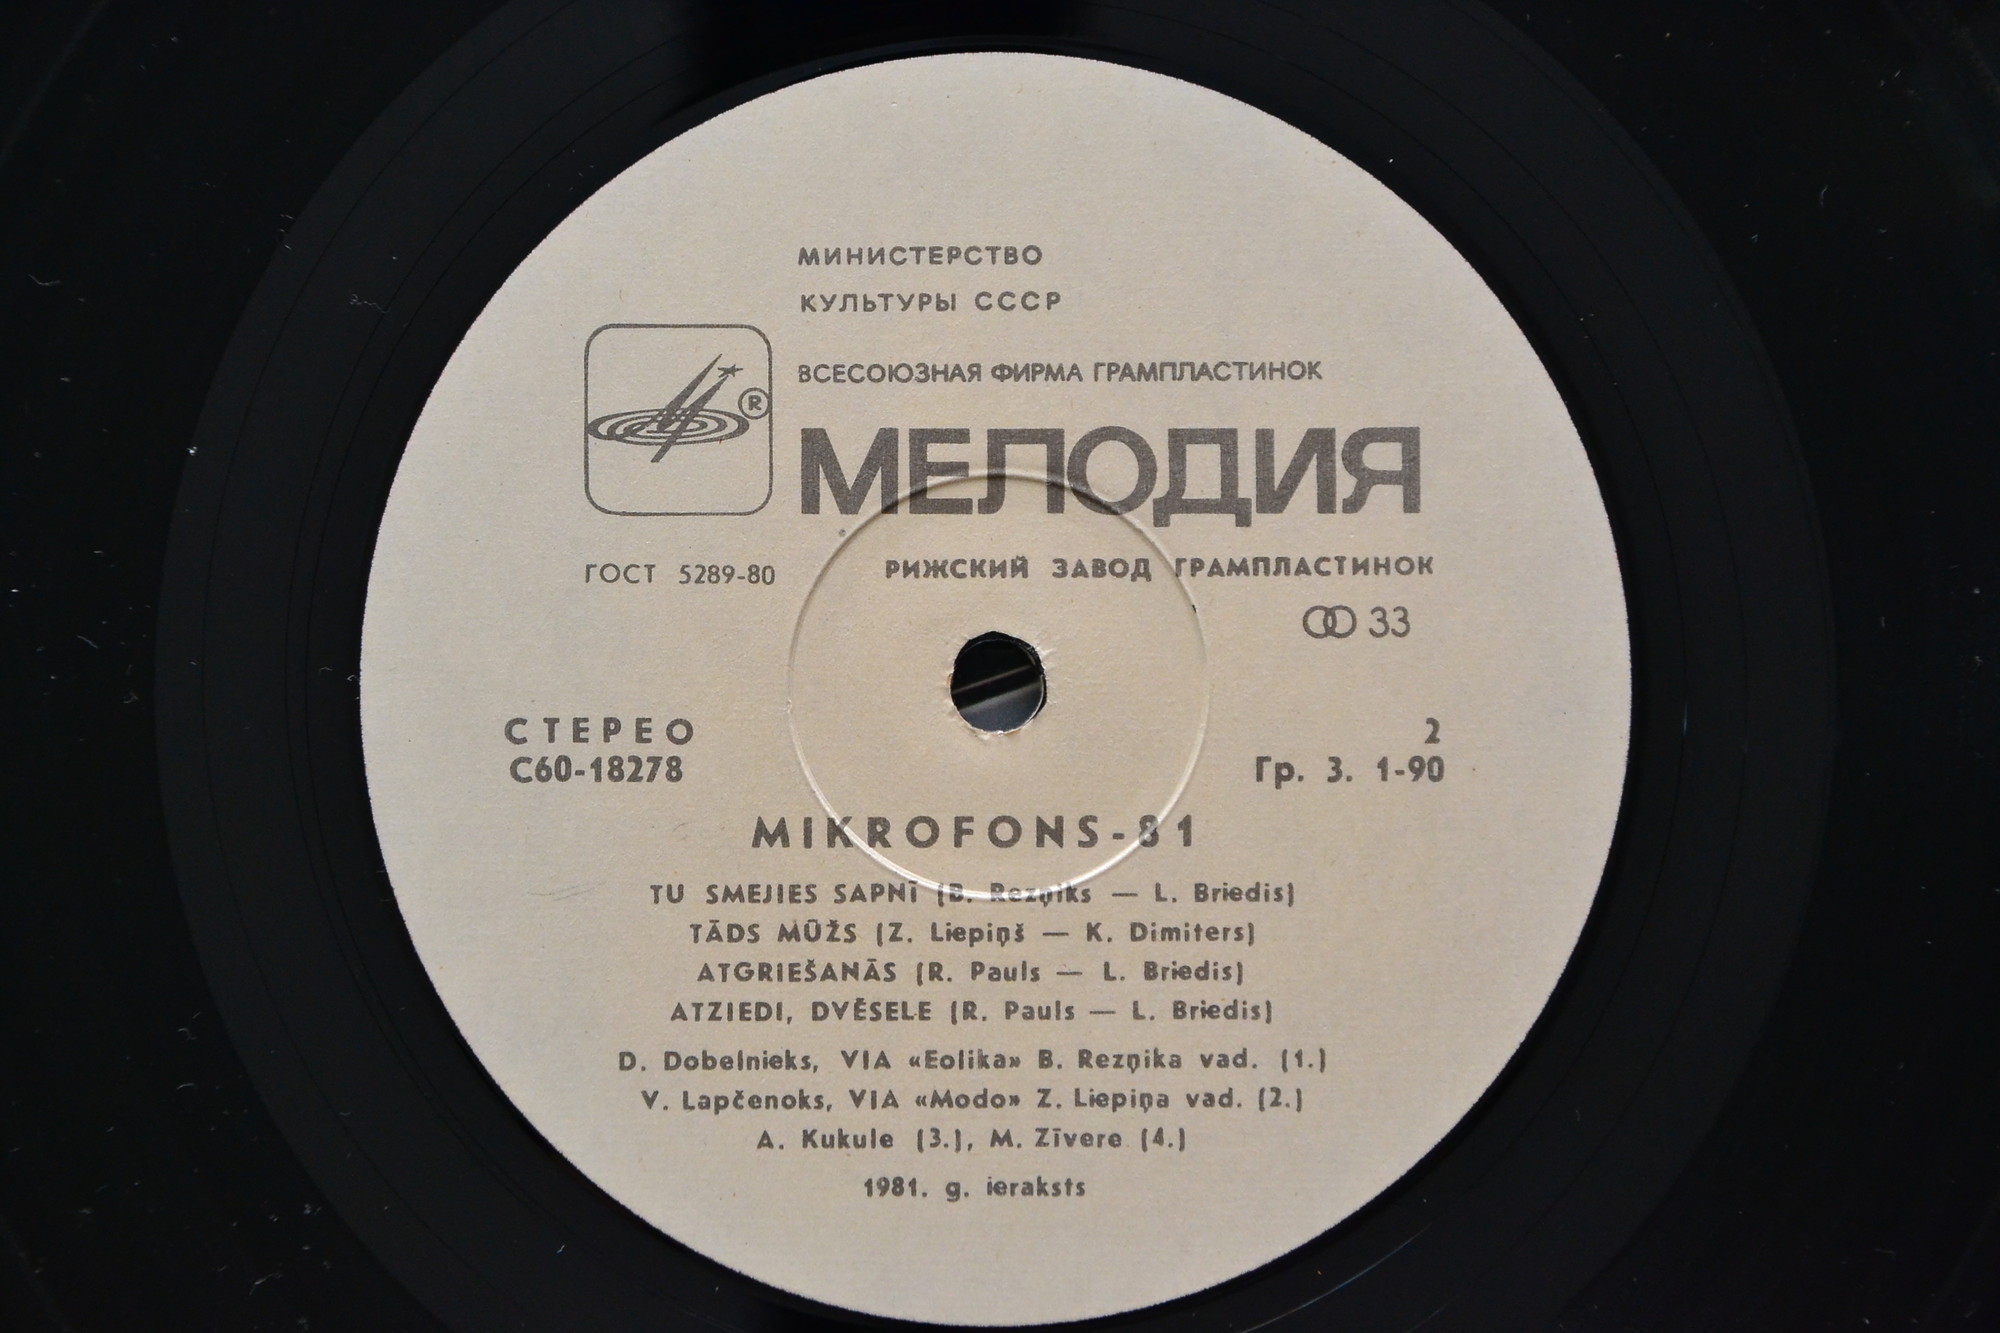 Микрофон-81 (Mikrofons-81) - 2 (на латышском языке)